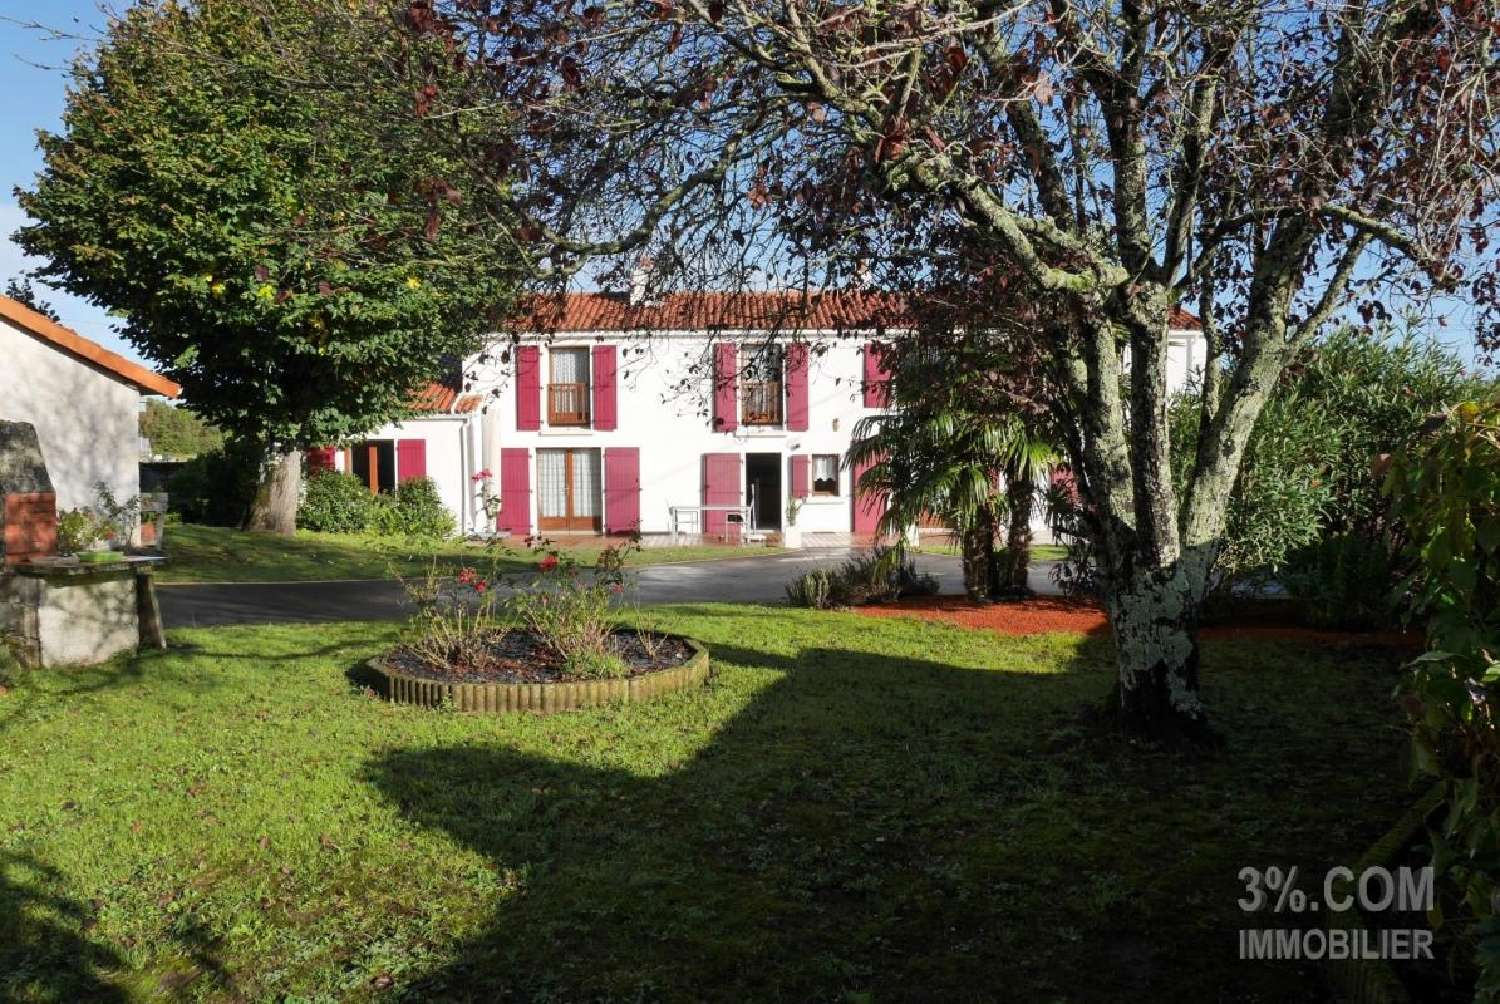  à vendre maison Thouaré-sur-Loire Loire-Atlantique 1